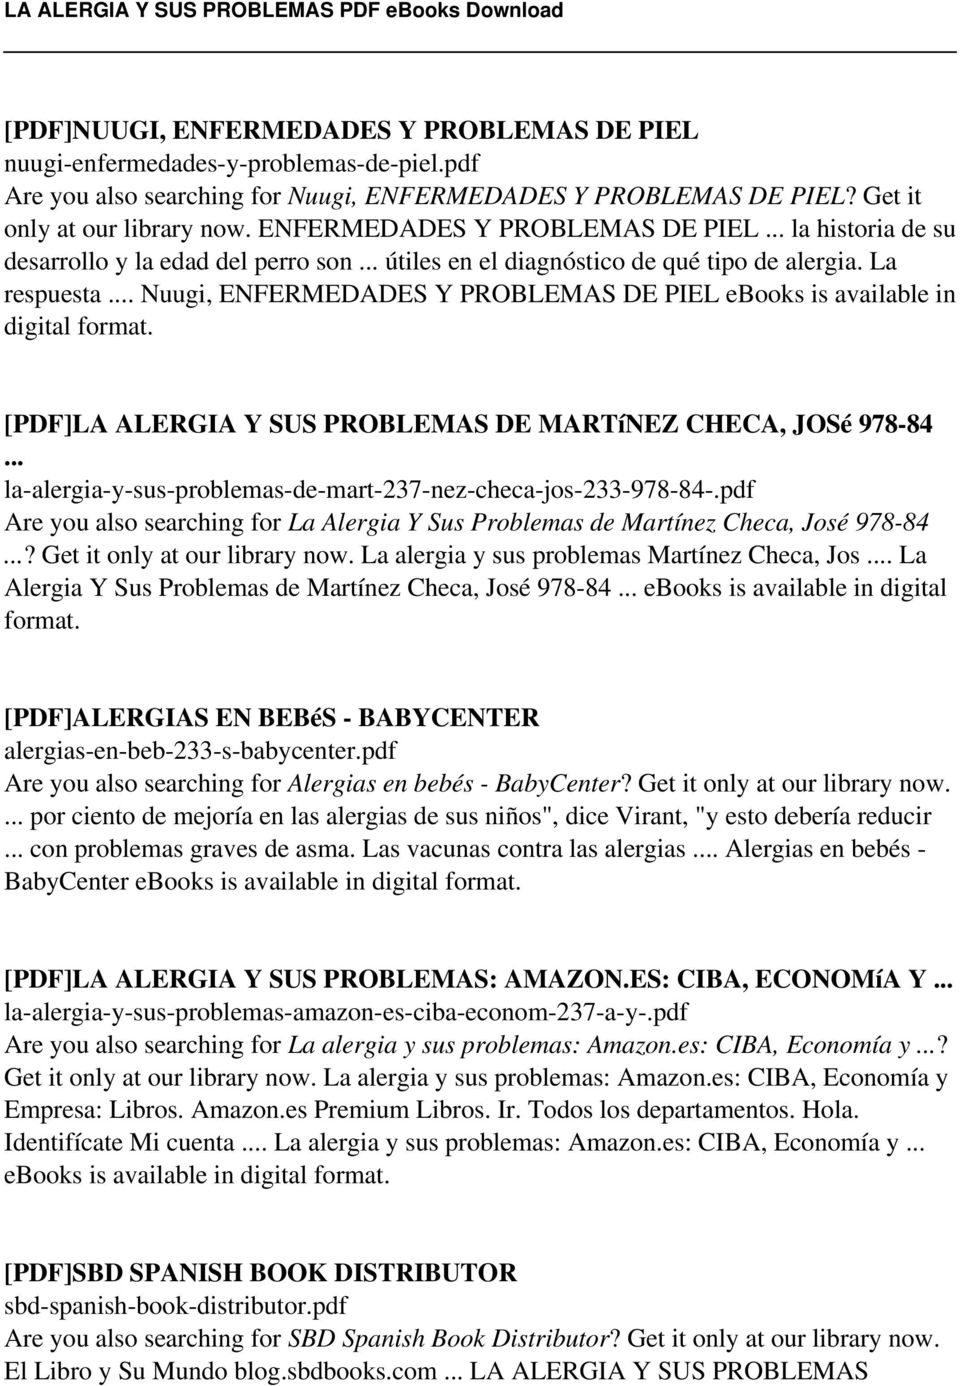 .. Nuugi, ENFERMEDADES Y PROBLEMAS DE PIEL ebooks is available in digital format. [PDF]LA ALERGIA Y SUS PROBLEMAS DE MARTíNEZ CHECA, JOSé 978-84.